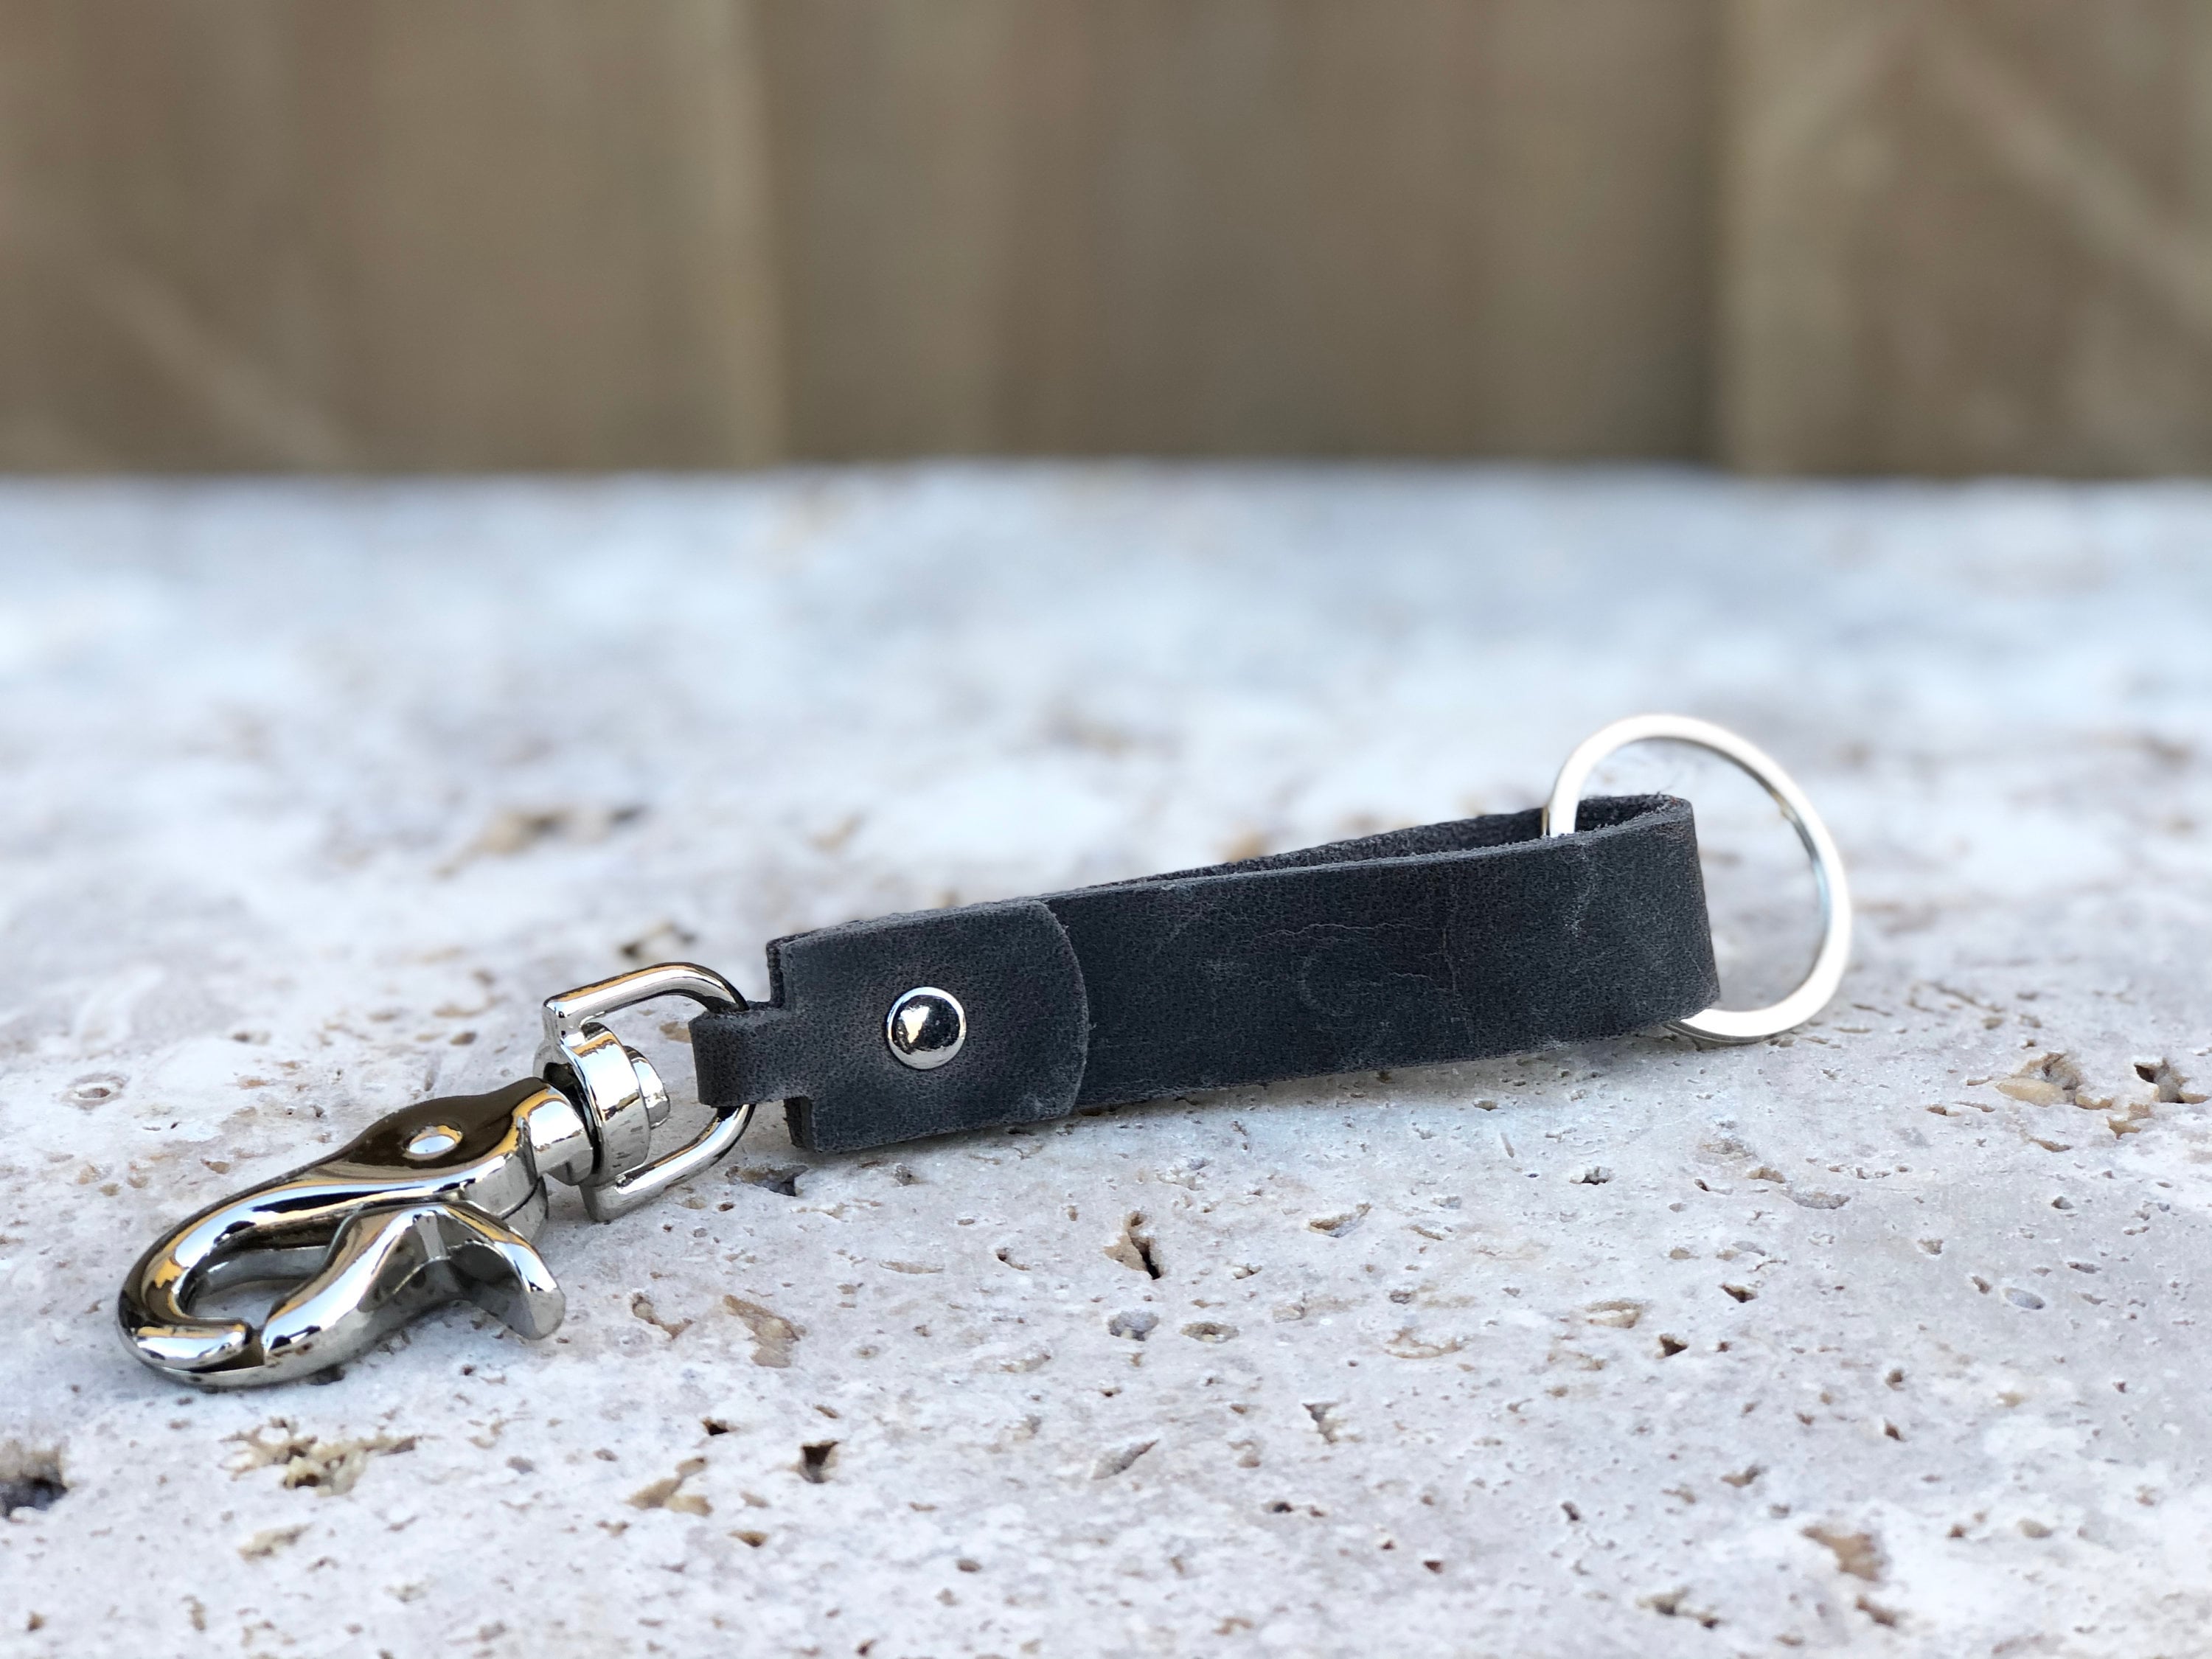 Black Leather Key Ring Holder - White Stitching, Short handle design